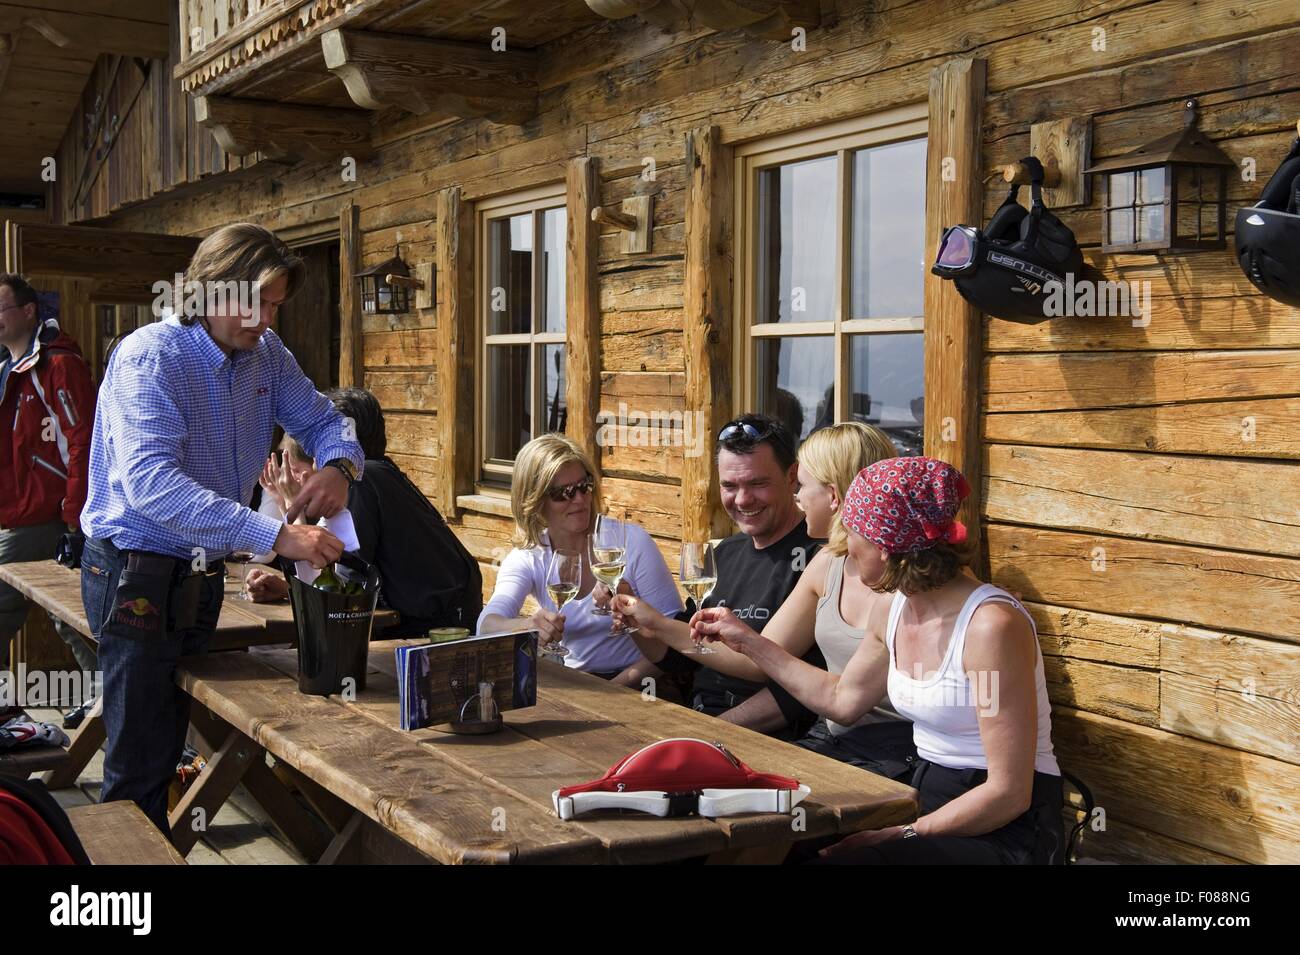 Las personas tomando bebidas en Toni Alm, Kitzbuhel, Tirol, Austria Foto de stock